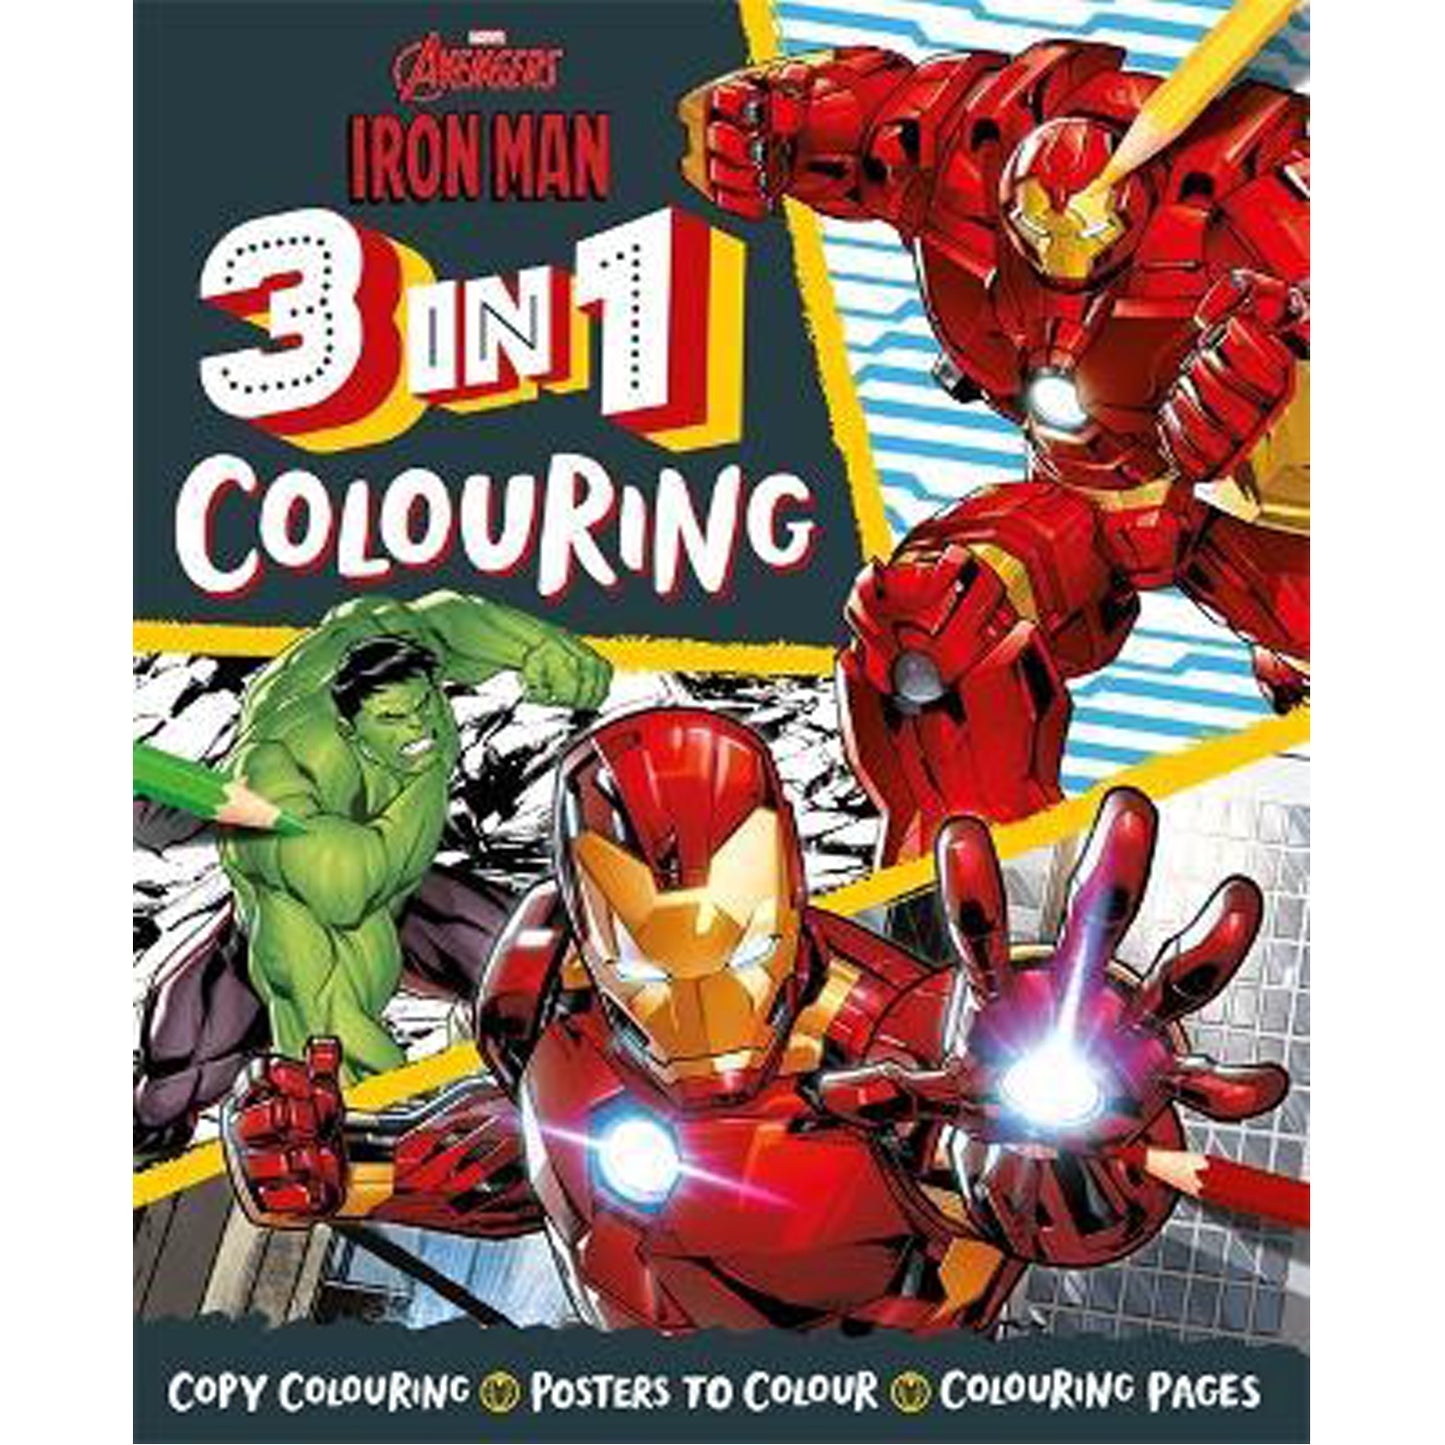 Marvel Avengers Iron Man: 3 in 1 Colouring Marvel Entertainment International Ltd